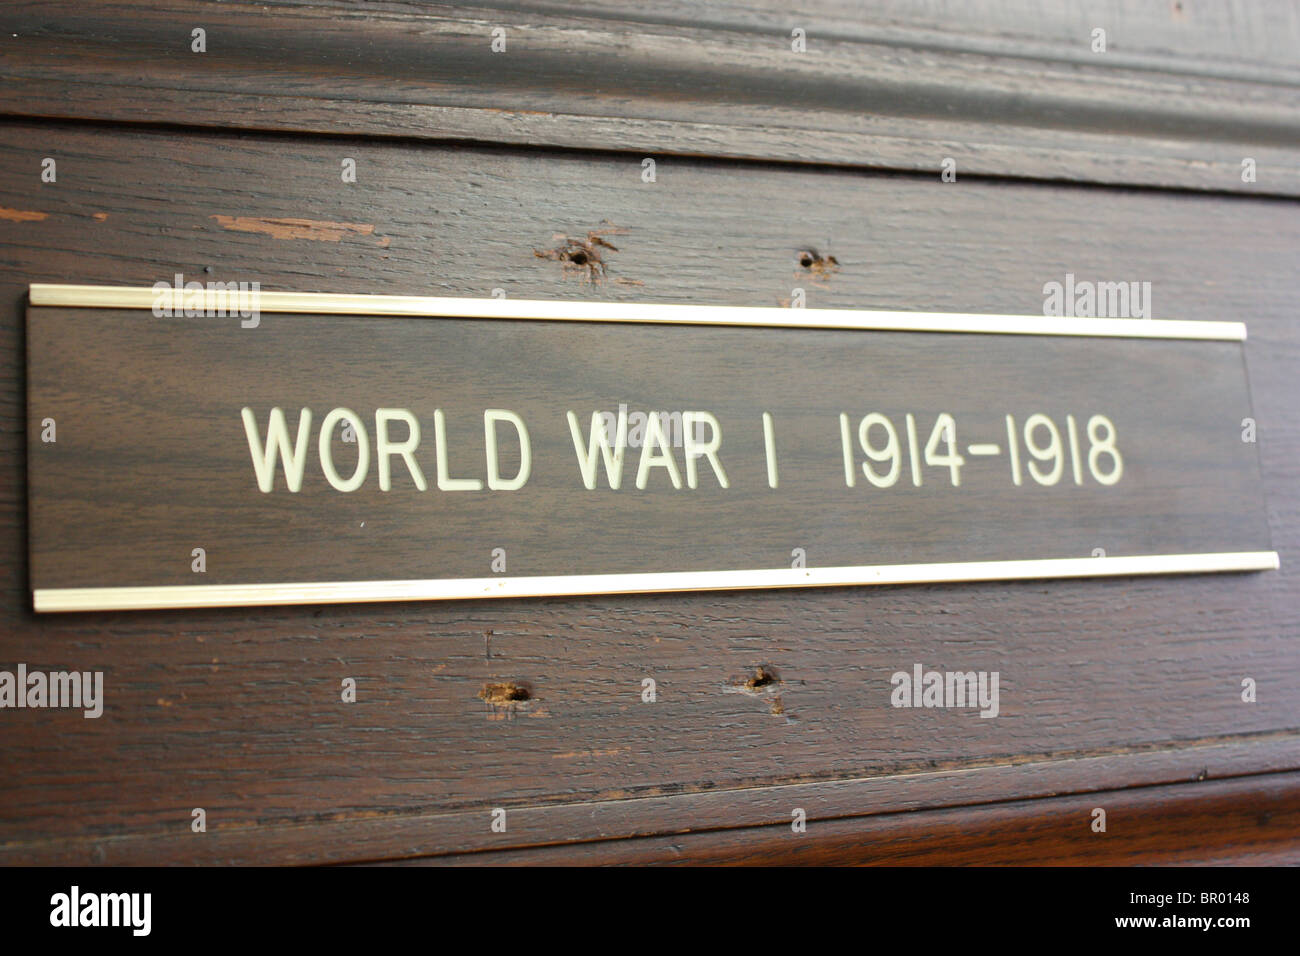 world war I 1914-1918 sign Stock Photo